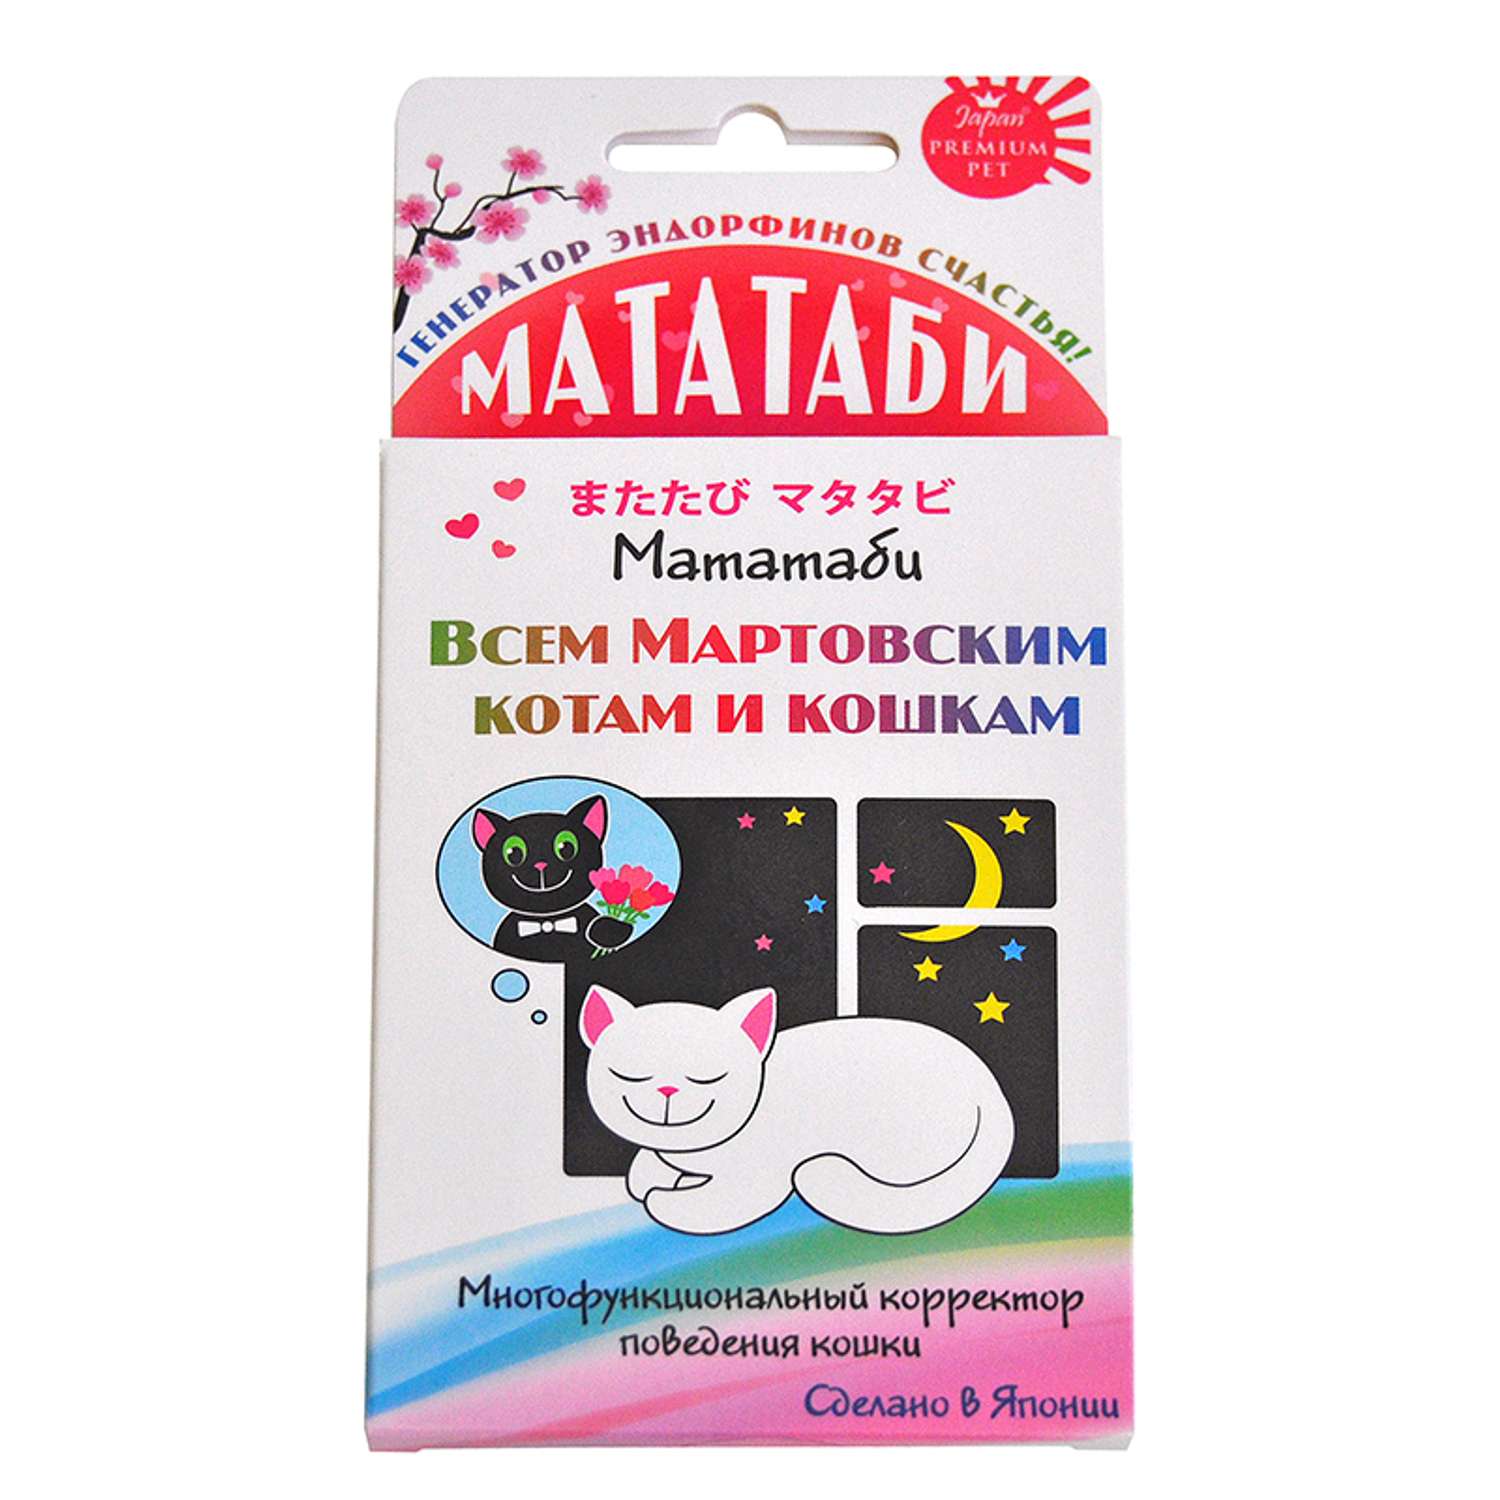 Пищевая добавка для кошек Itosui Мататаби для коррекции поведения в период течки - фото 1